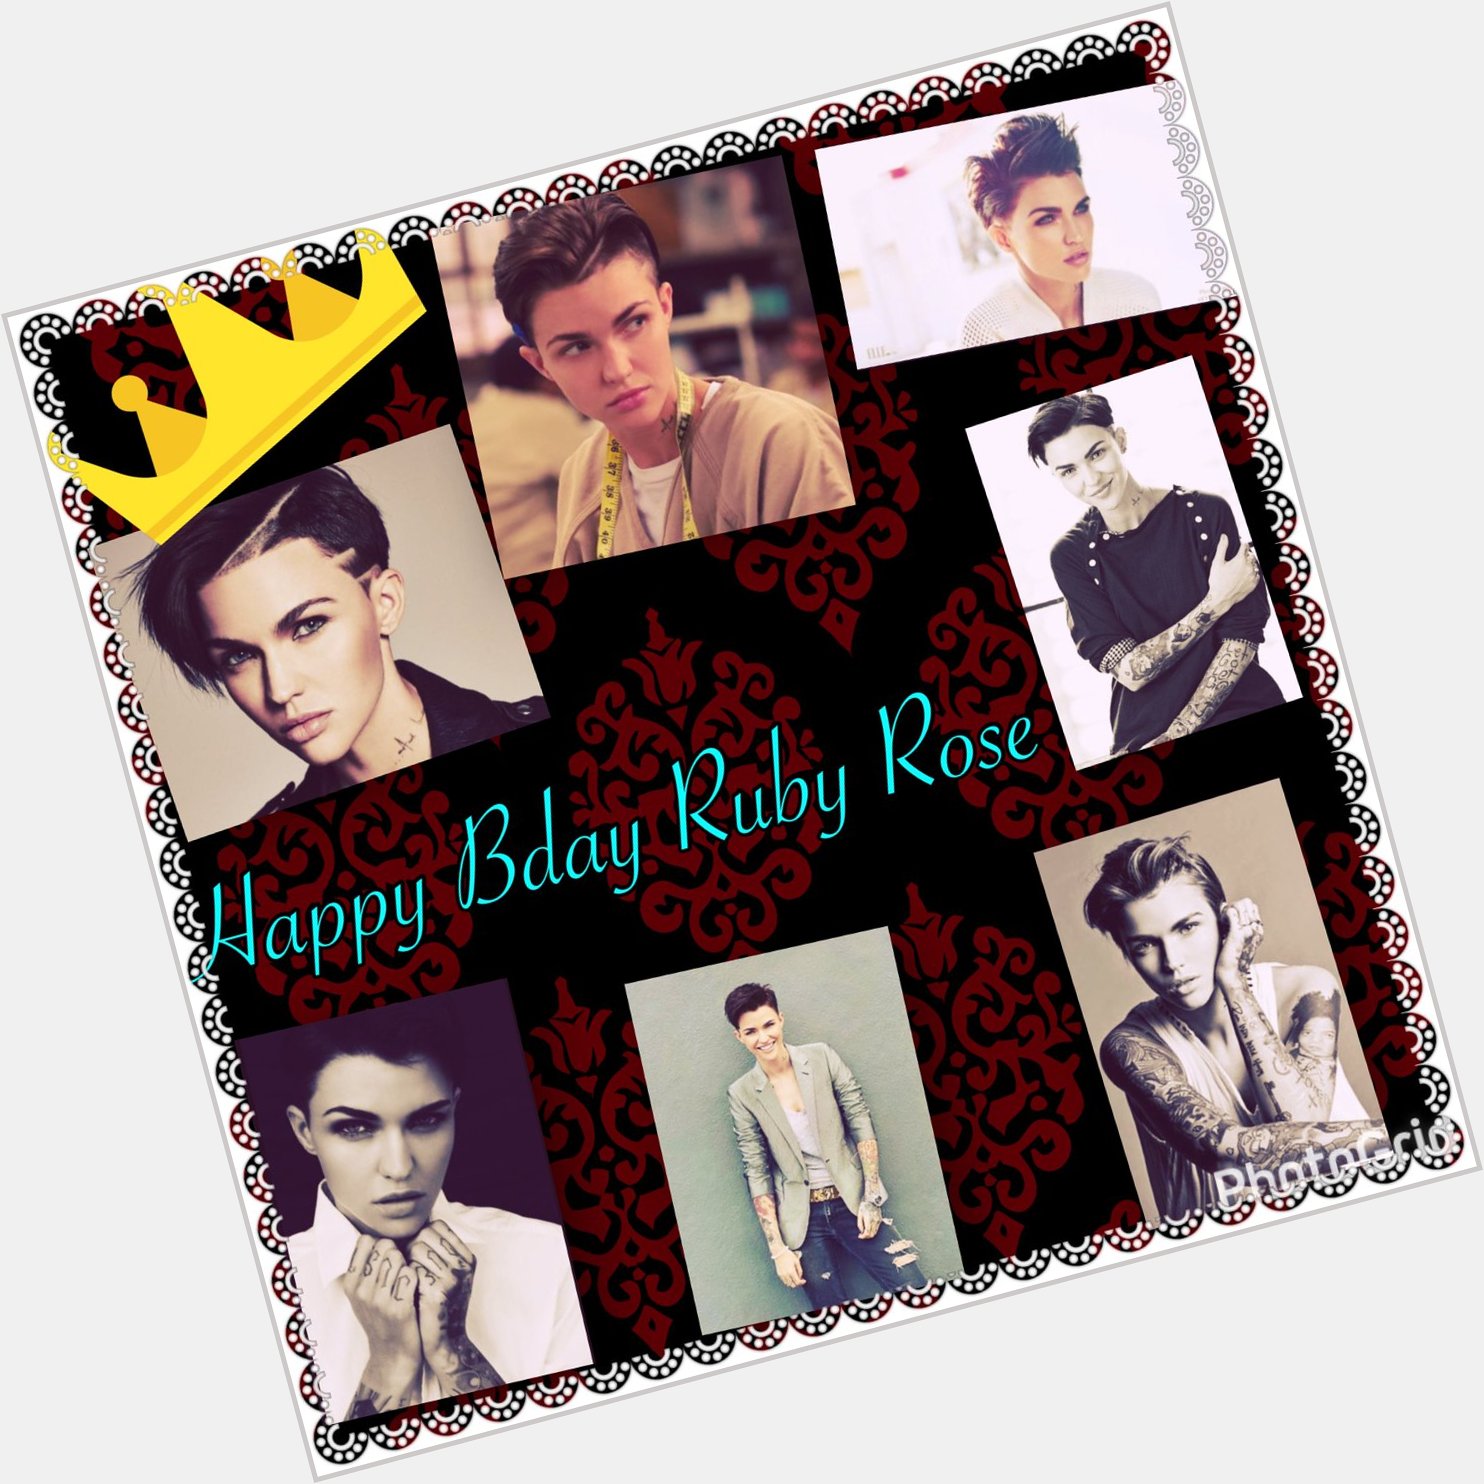 Happy birthday Ruby Rose             